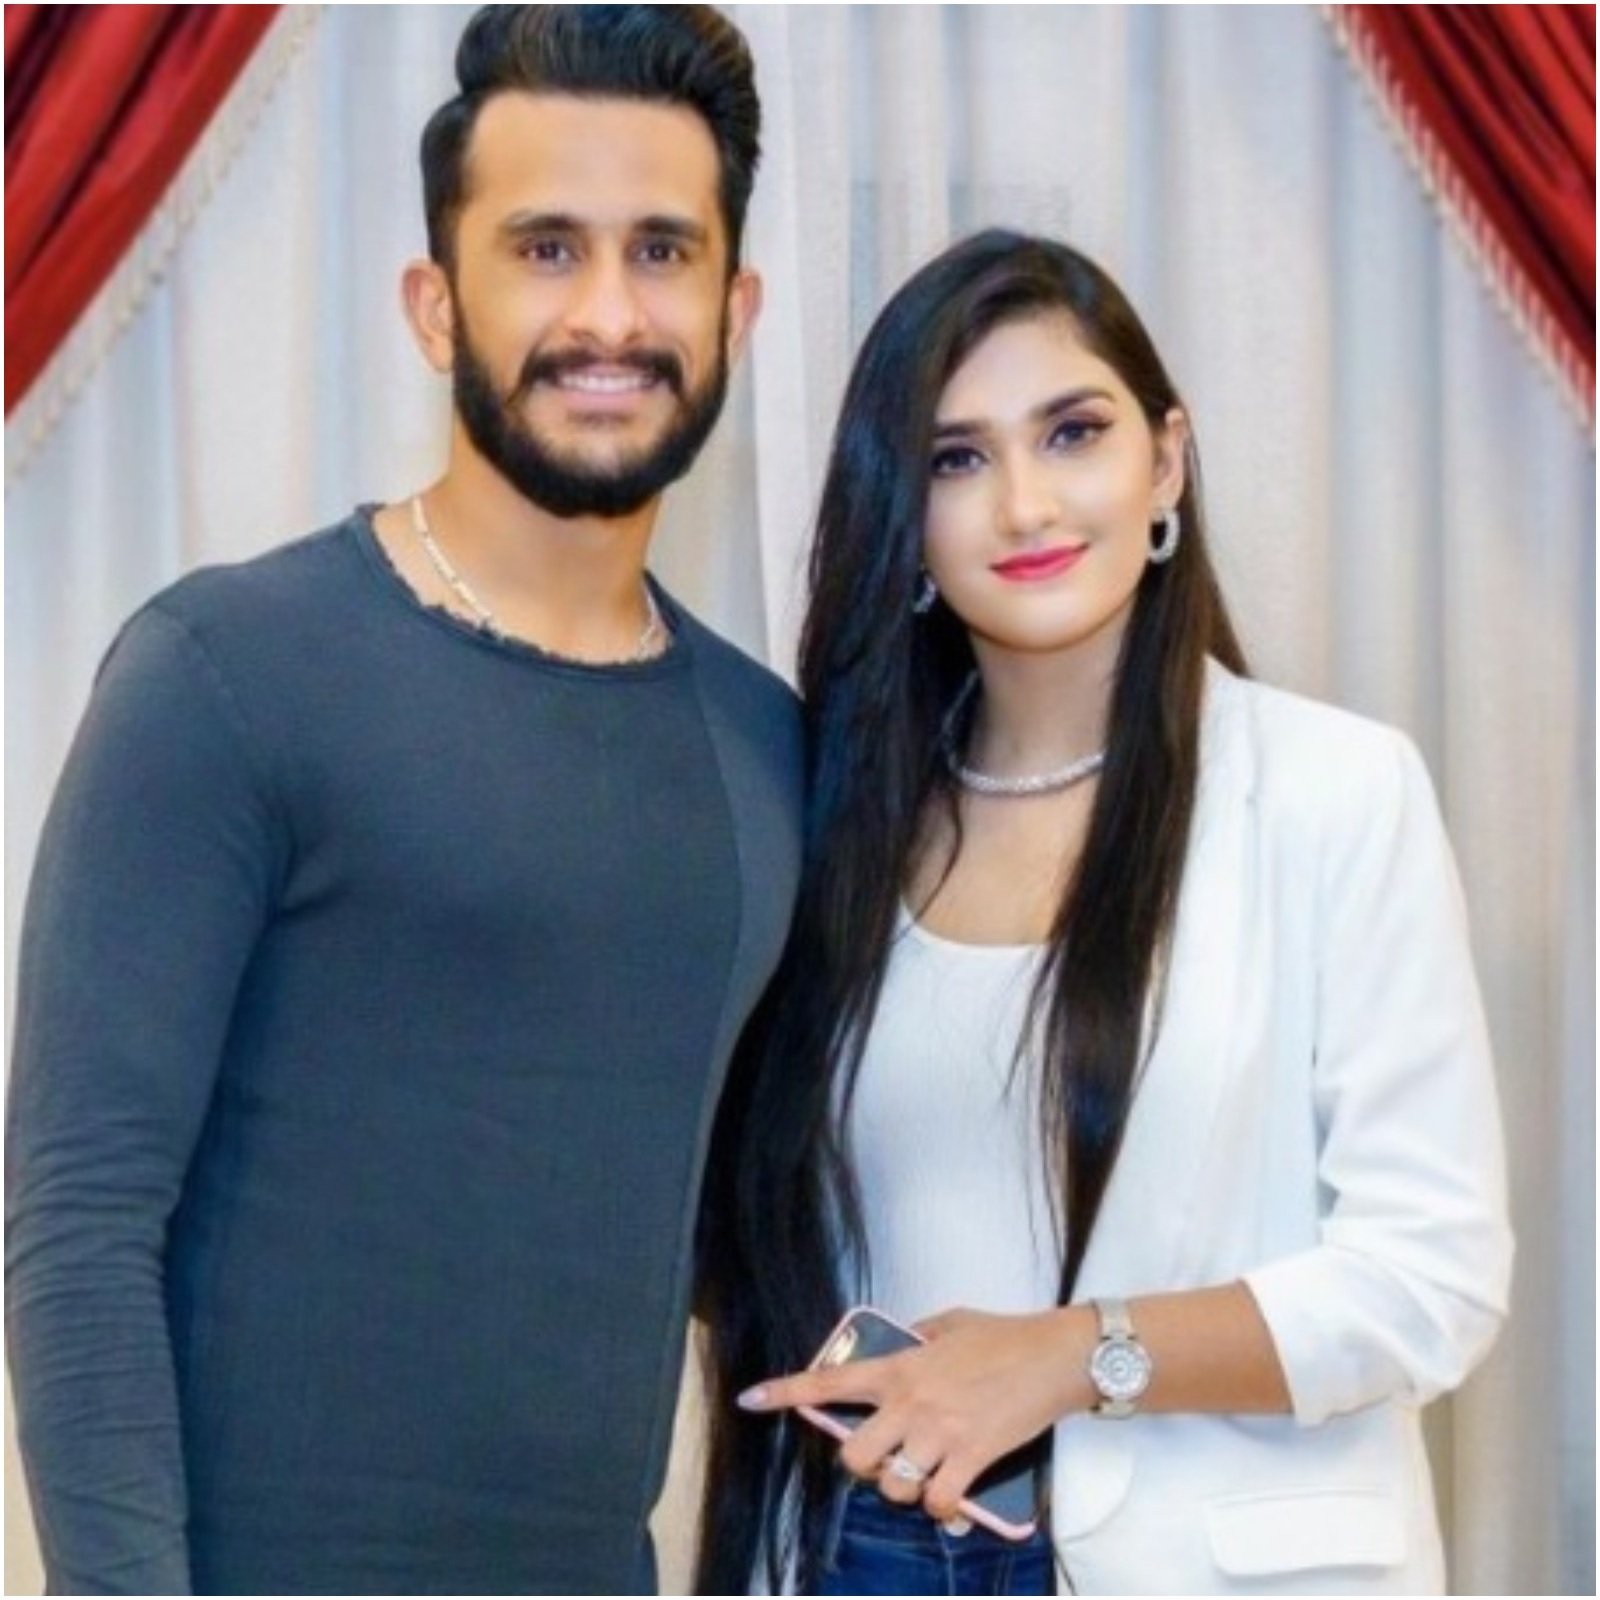  विराट कोहली की फैन होने के साथ-साथ शामिया आरजू का भारत के साथ भी खास रिश्ता है. दरअसल, शामिया एक भारतीय नागरिक हैं, जिनकी शादी पाकिस्तानी पेसर हसन अली के साथ 2019 में दुबई में हुई थीं. (Samiya Hassan Ali/Instagram)